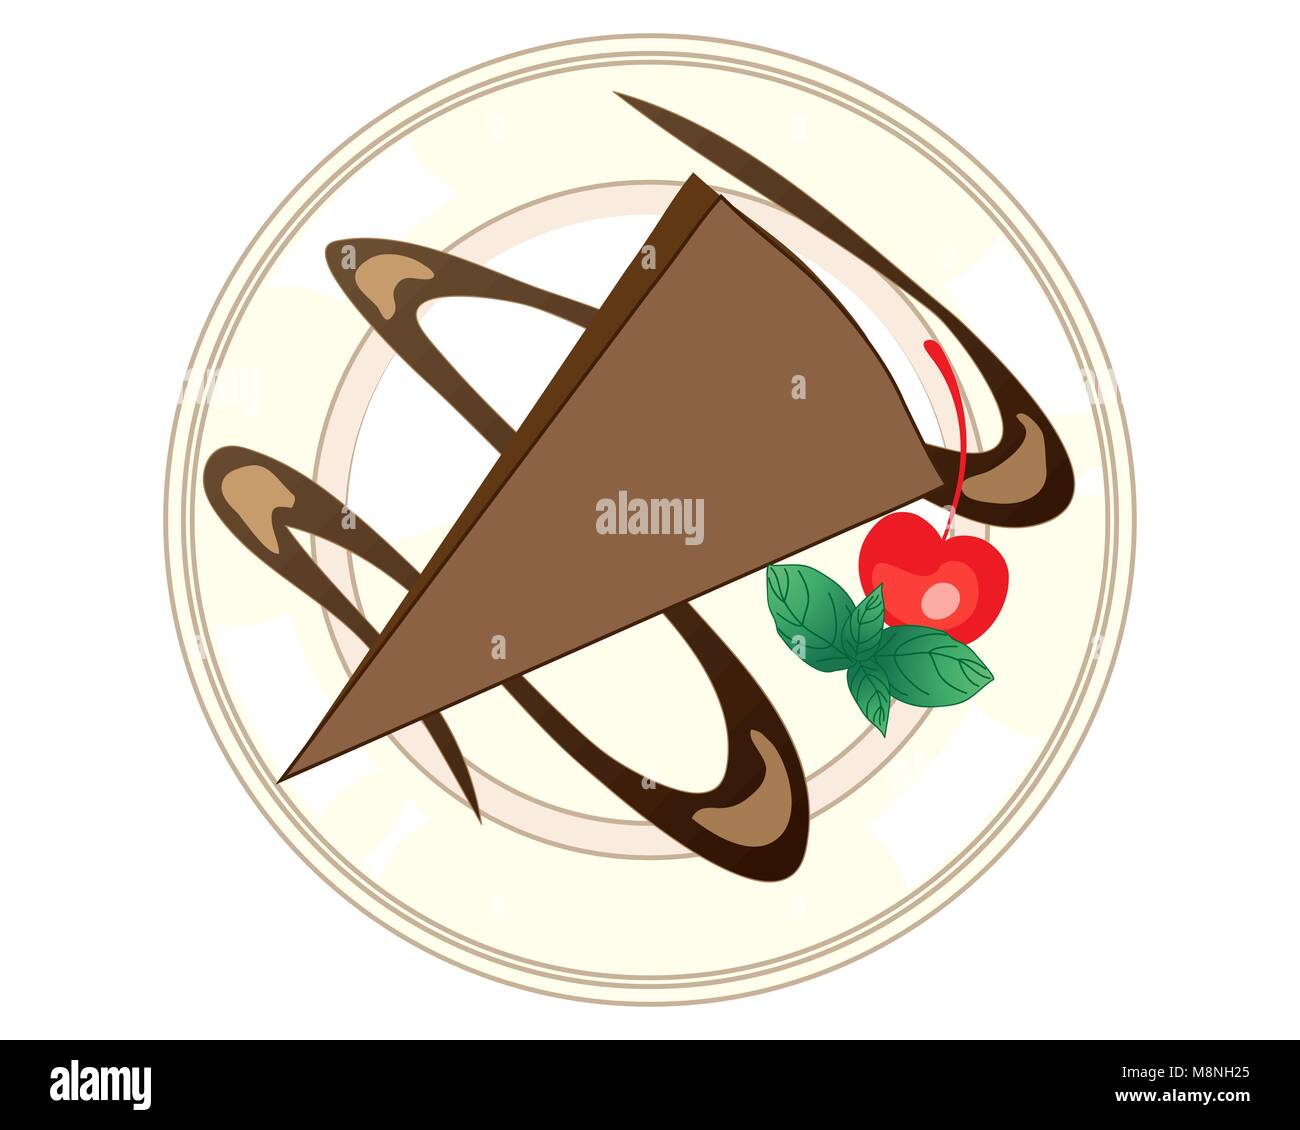 Un vecteur illustration en eps 10 format d'une annonce pour une tranche de triangulaire avec cherry dessert au chocolat et garnir de menthe Illustration de Vecteur